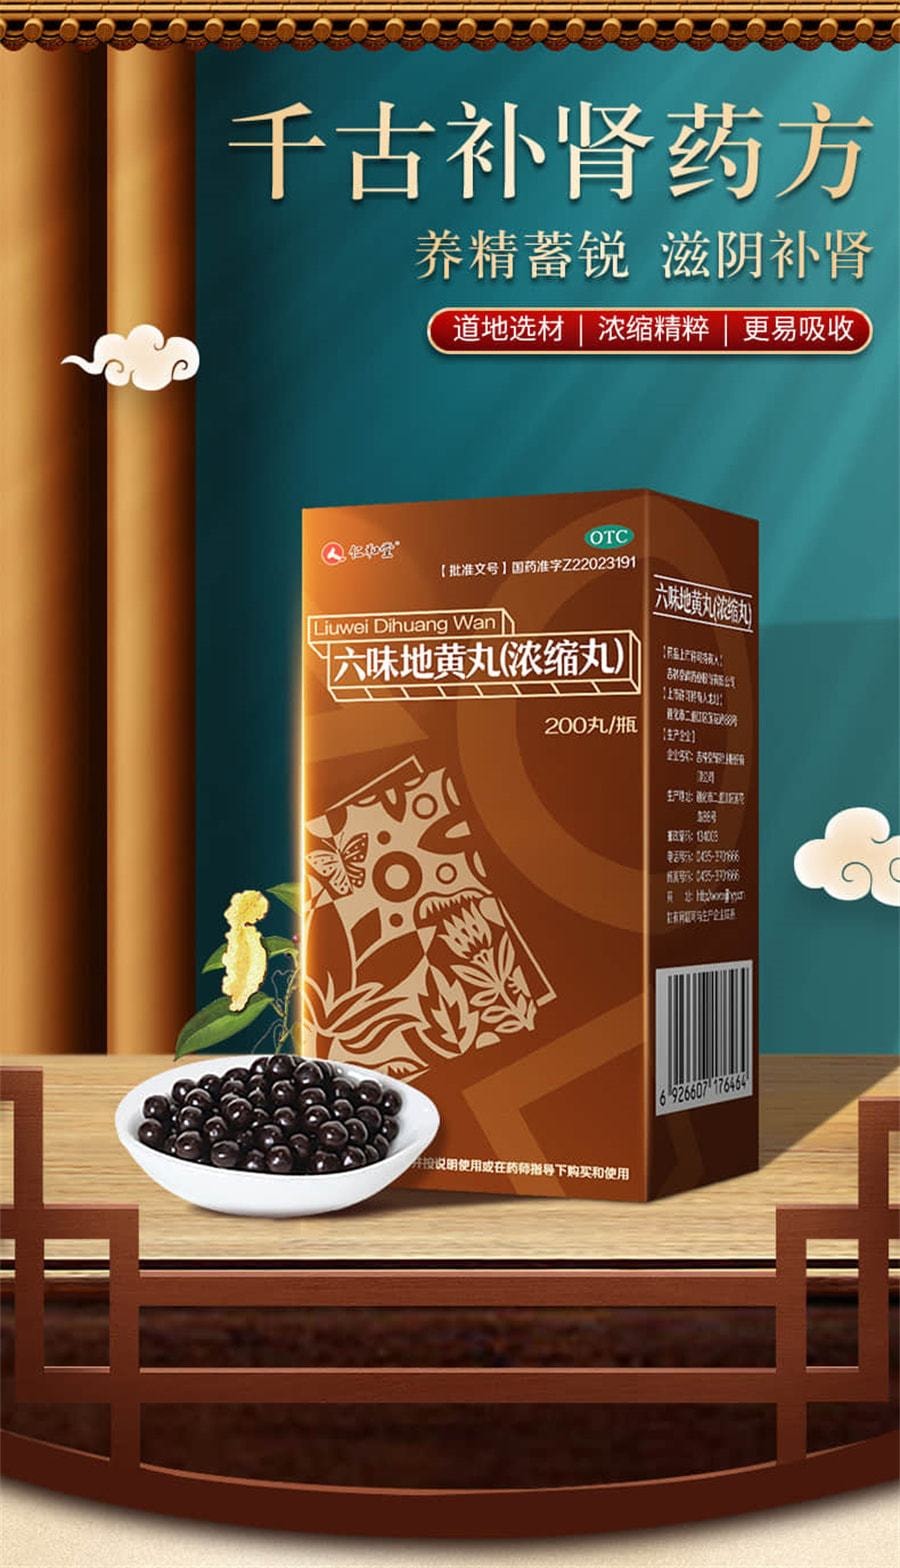 Liuwei Dihuang pills nourishing kidney for men nourishing essence kidney deficiency nourishing essence Gujing 200 pills